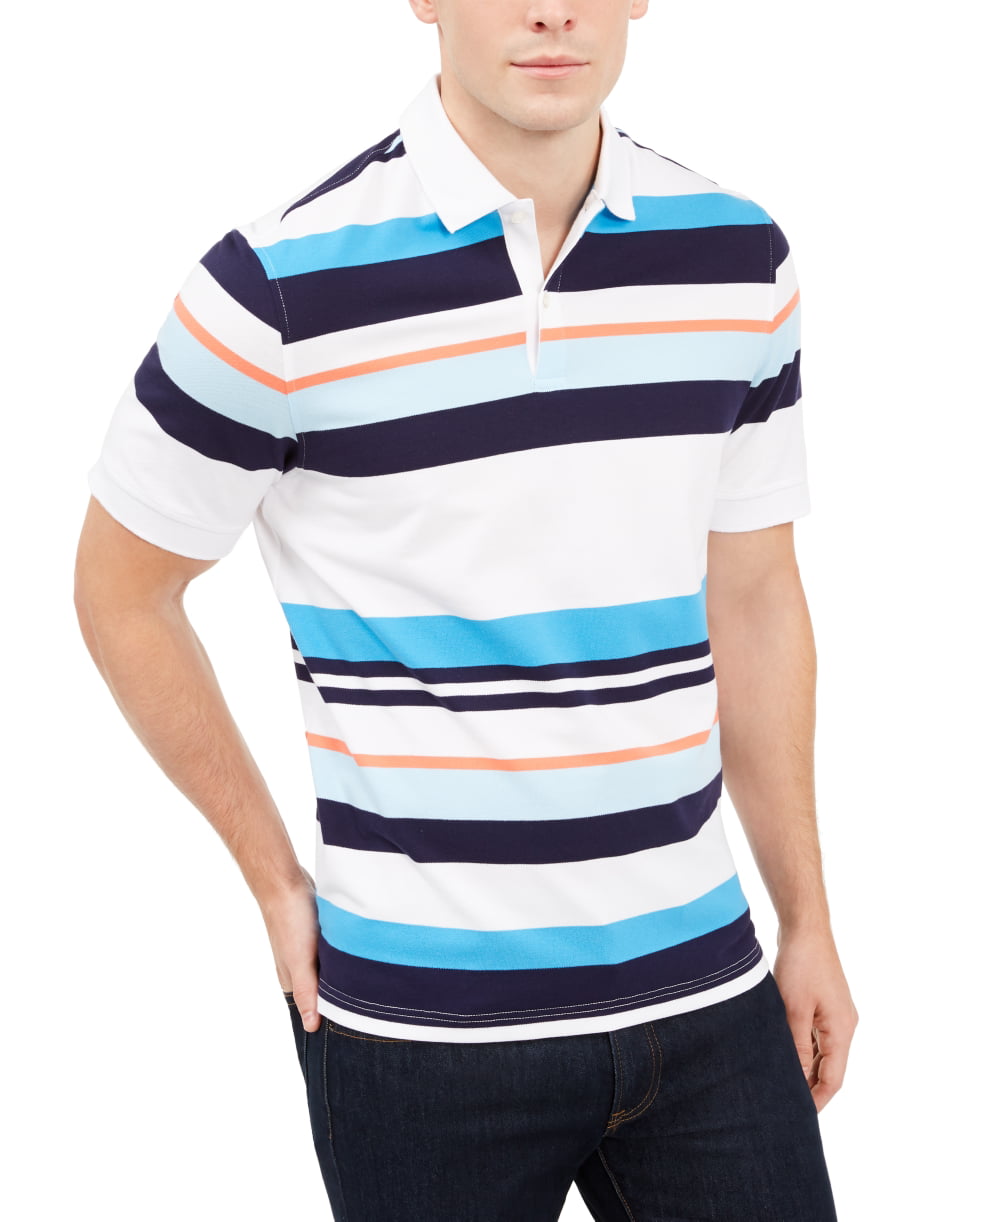 US Polo ASSN Big Pony Short Sleeves Striped-Collar Classic Mesh Shirt M L XL XXL 